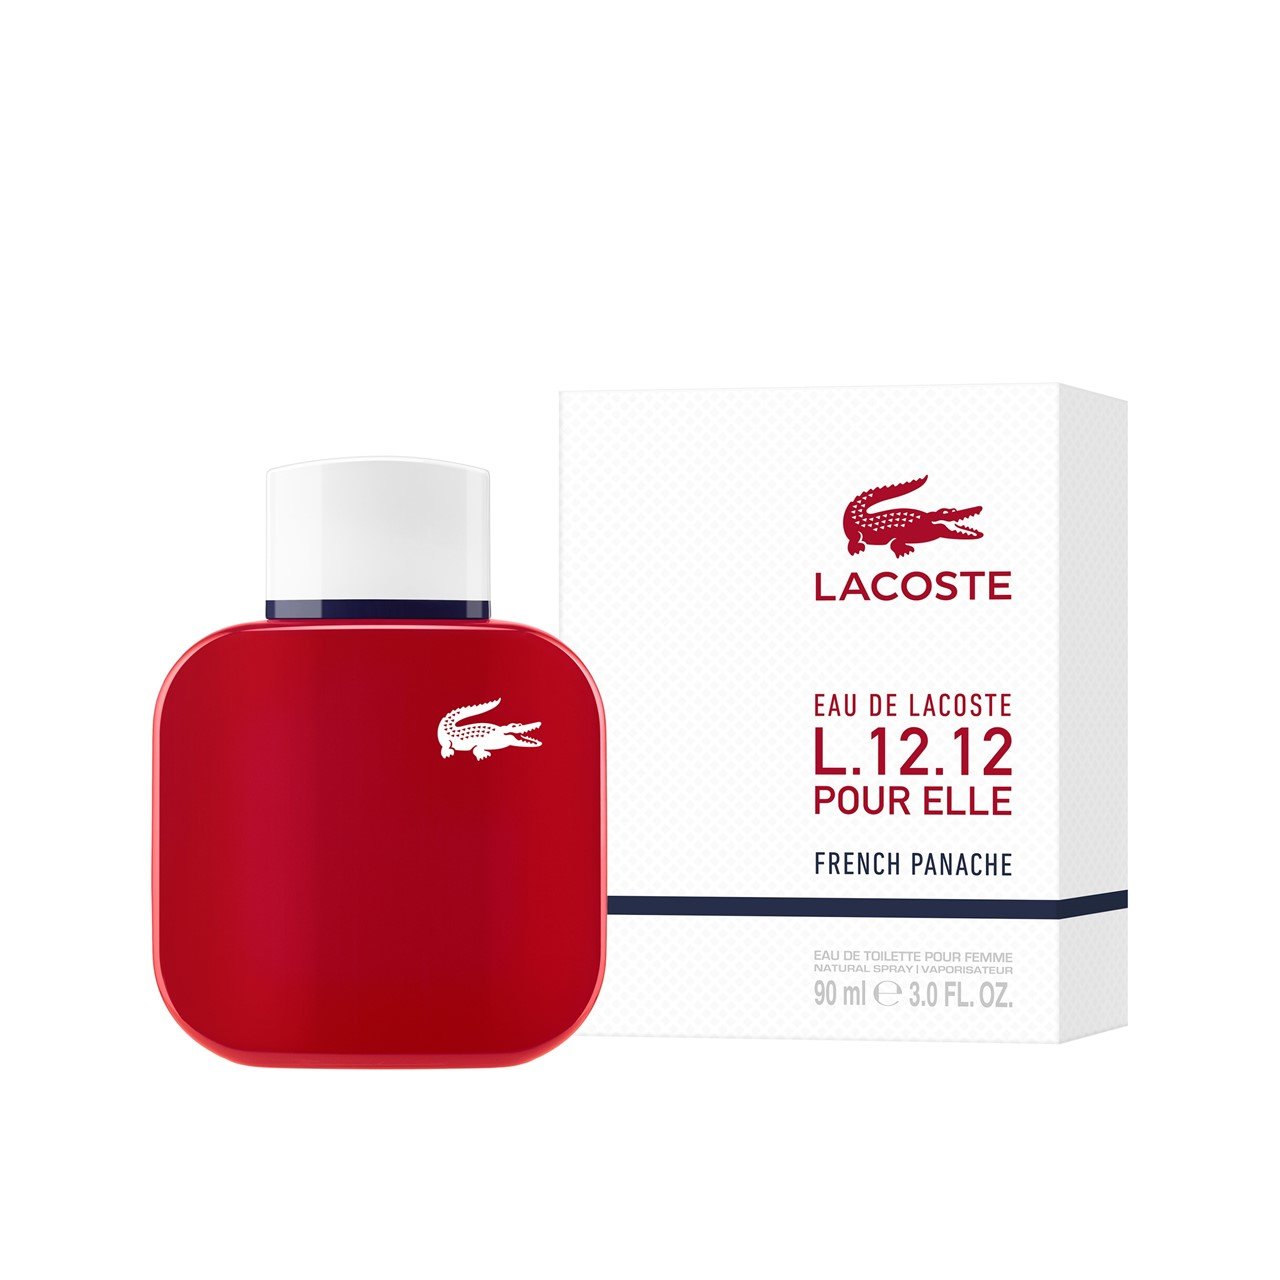 Lacoste L.12.12 Pour Elle French Panache Eau de Toilette 90ml (3.0fl oz)